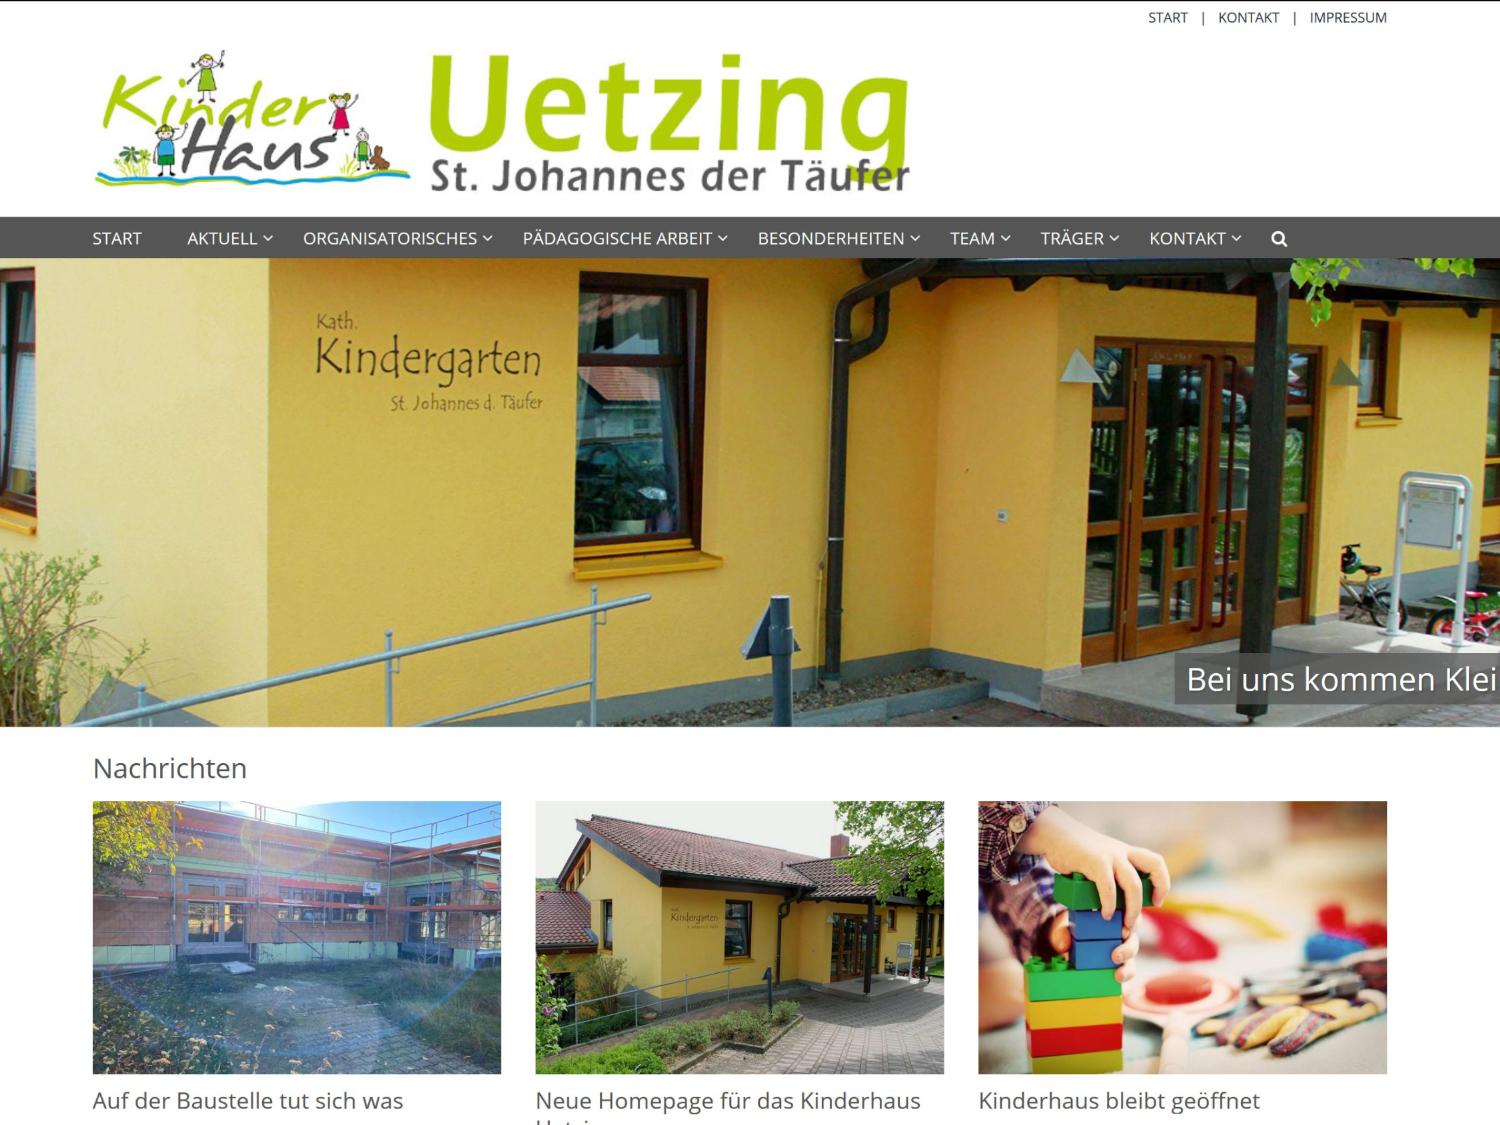 Shot der Startseite der Homepage des Kinderhauses St. Johannes der Täufer Uetzing